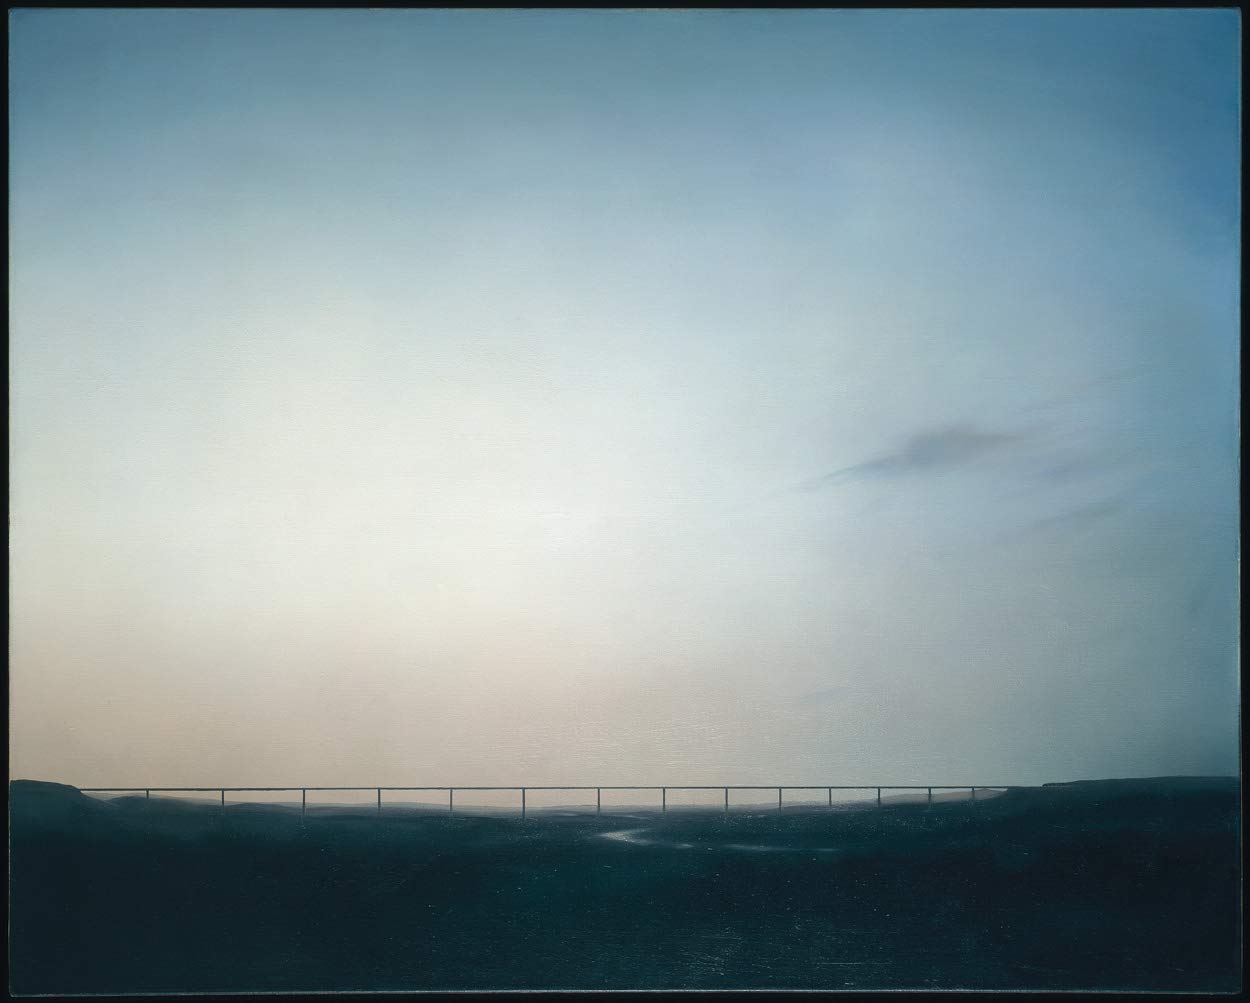 Gerhard Richter: Landscape